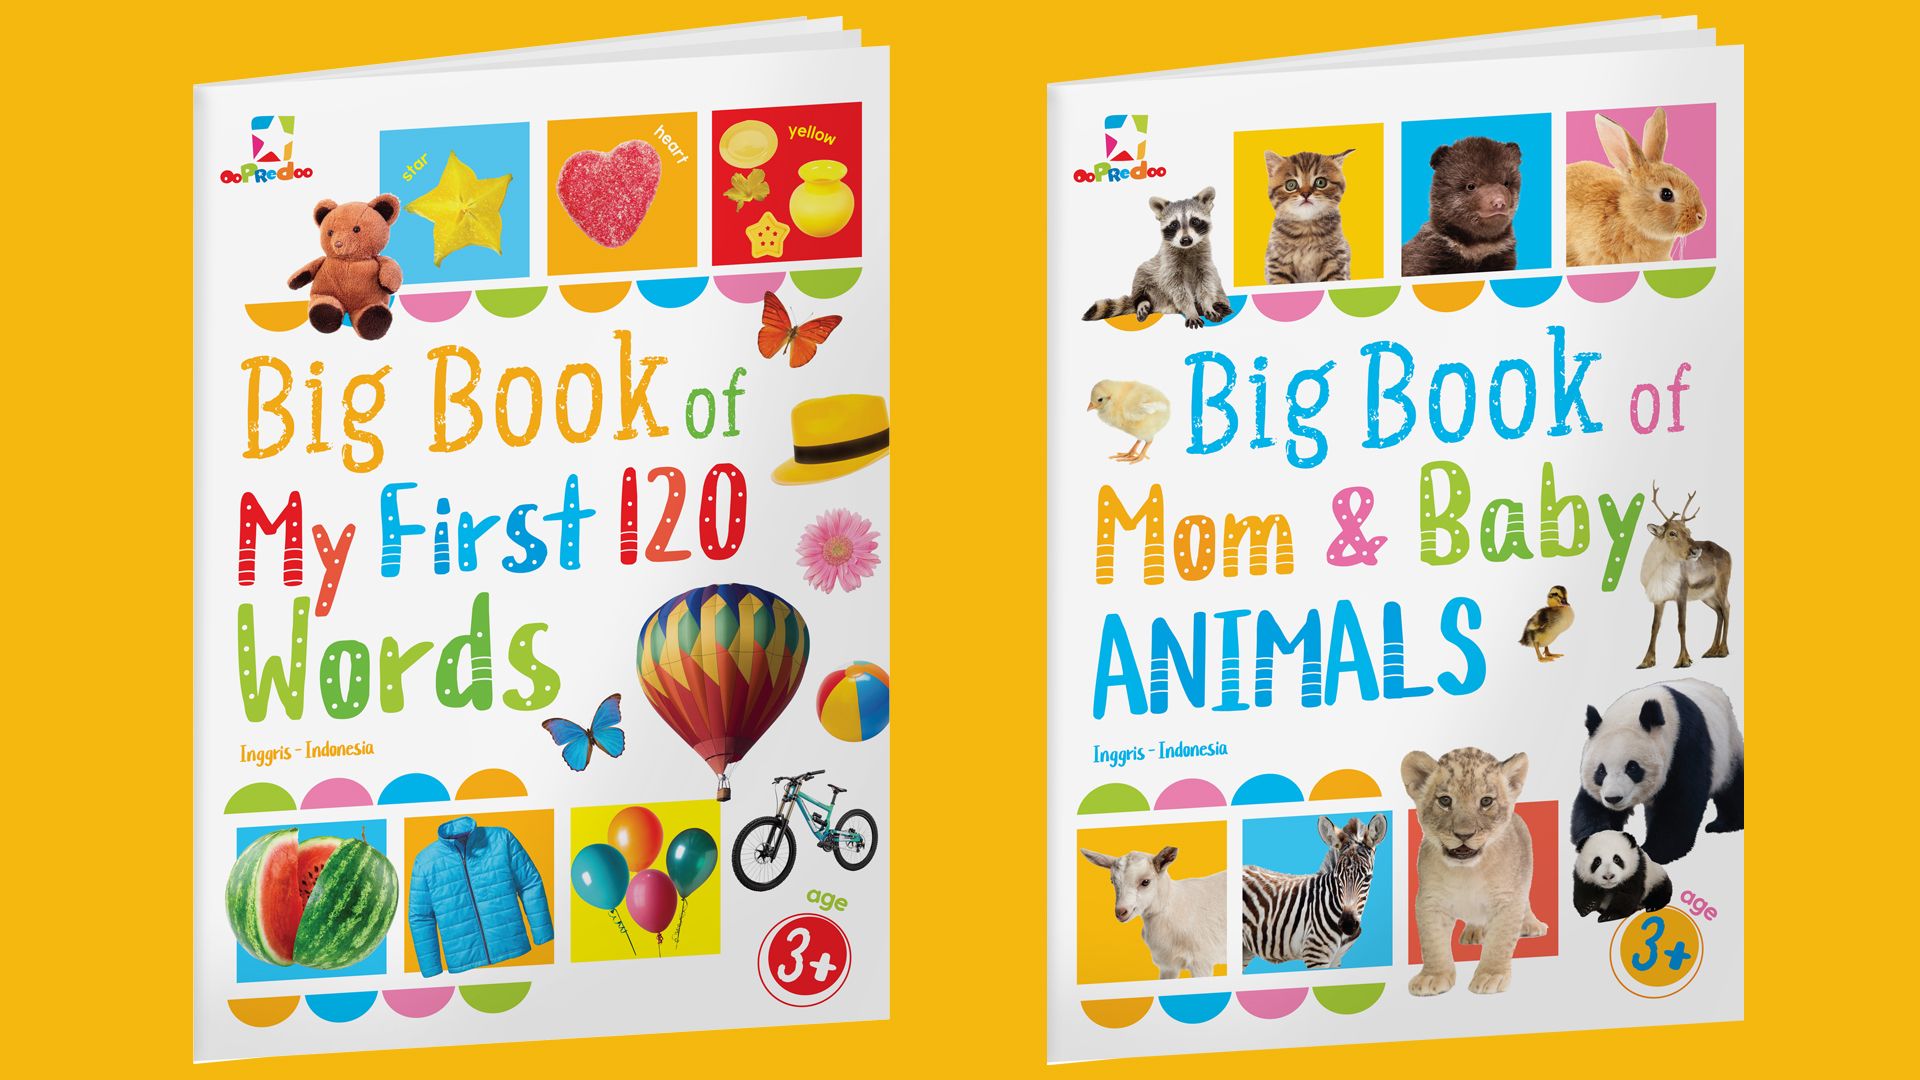 Big Book: Belajar Mengenal Kata & Mengenal Hewan